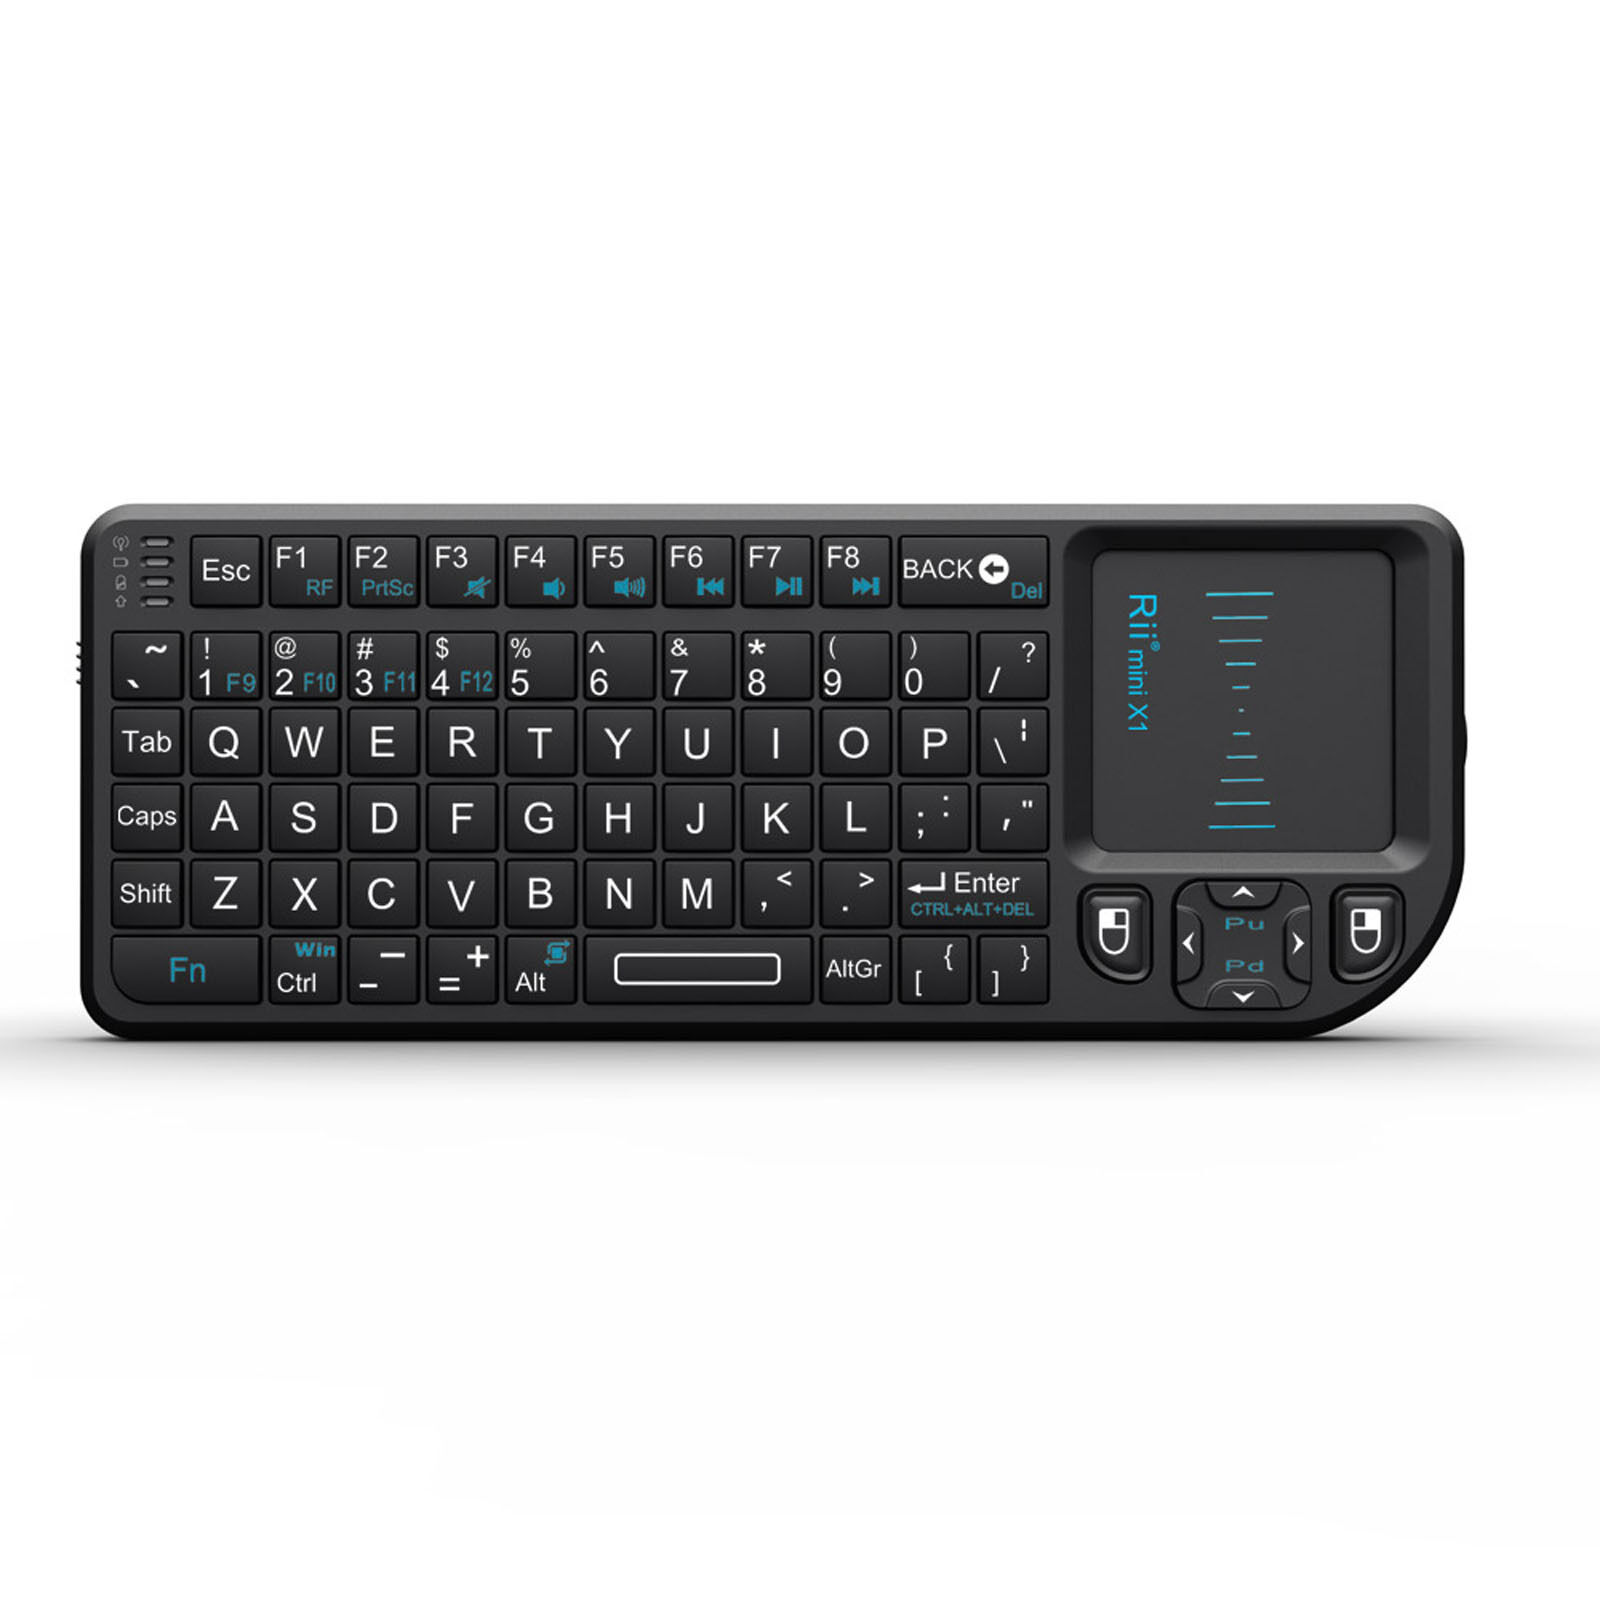 Rii Mini X1 RF Mini Wireless Keyboard Touchpad for PC Smart TV Android TV Box Rii 69529177